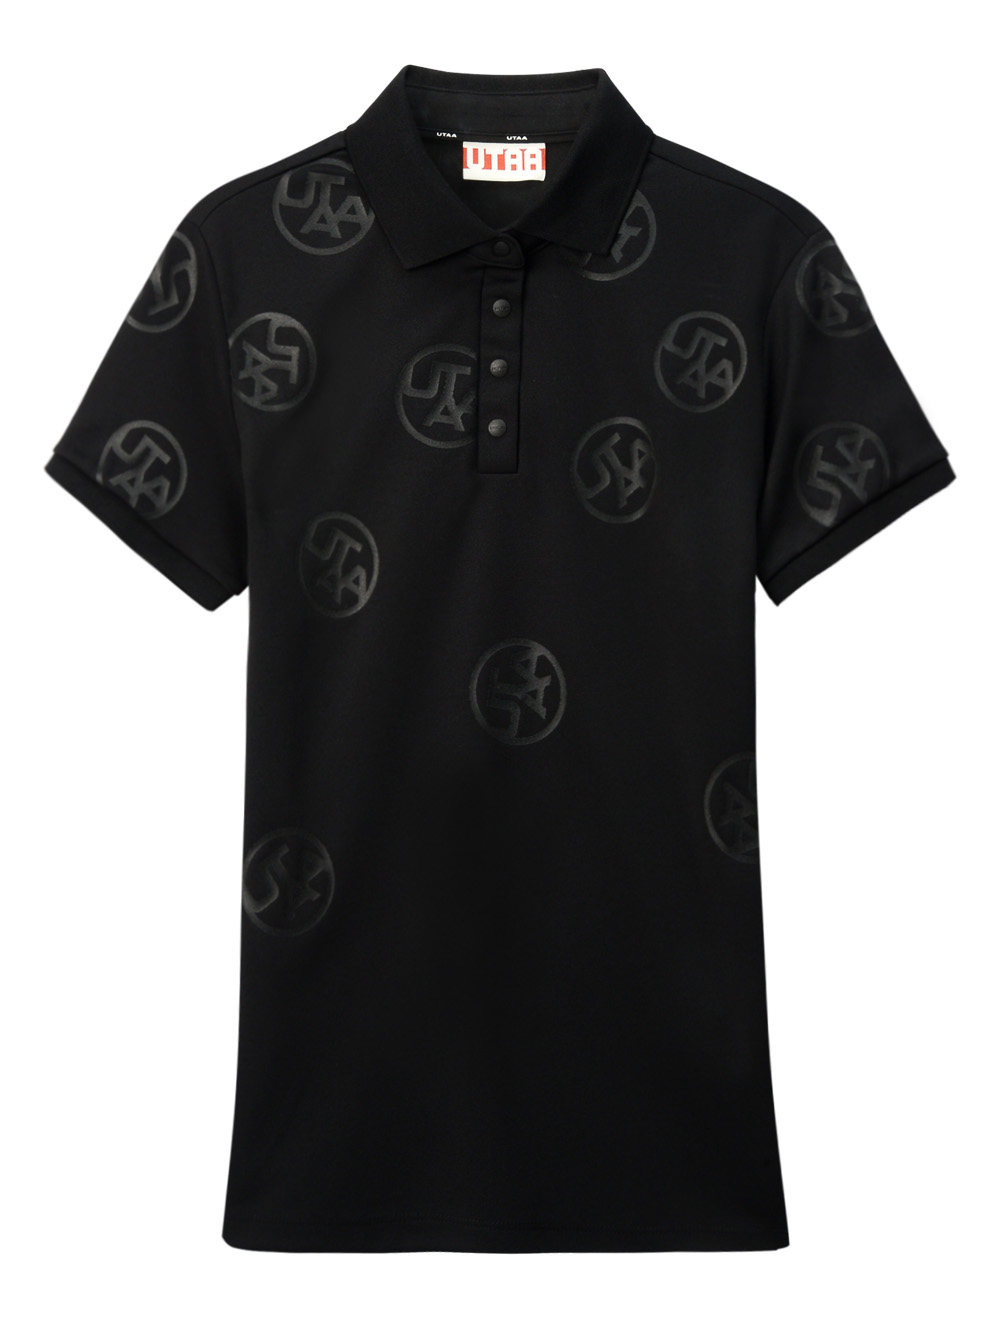 UTAA Logo Drop PK T-Shirts  : Women&#039;s Black (UC2TSF295BK)